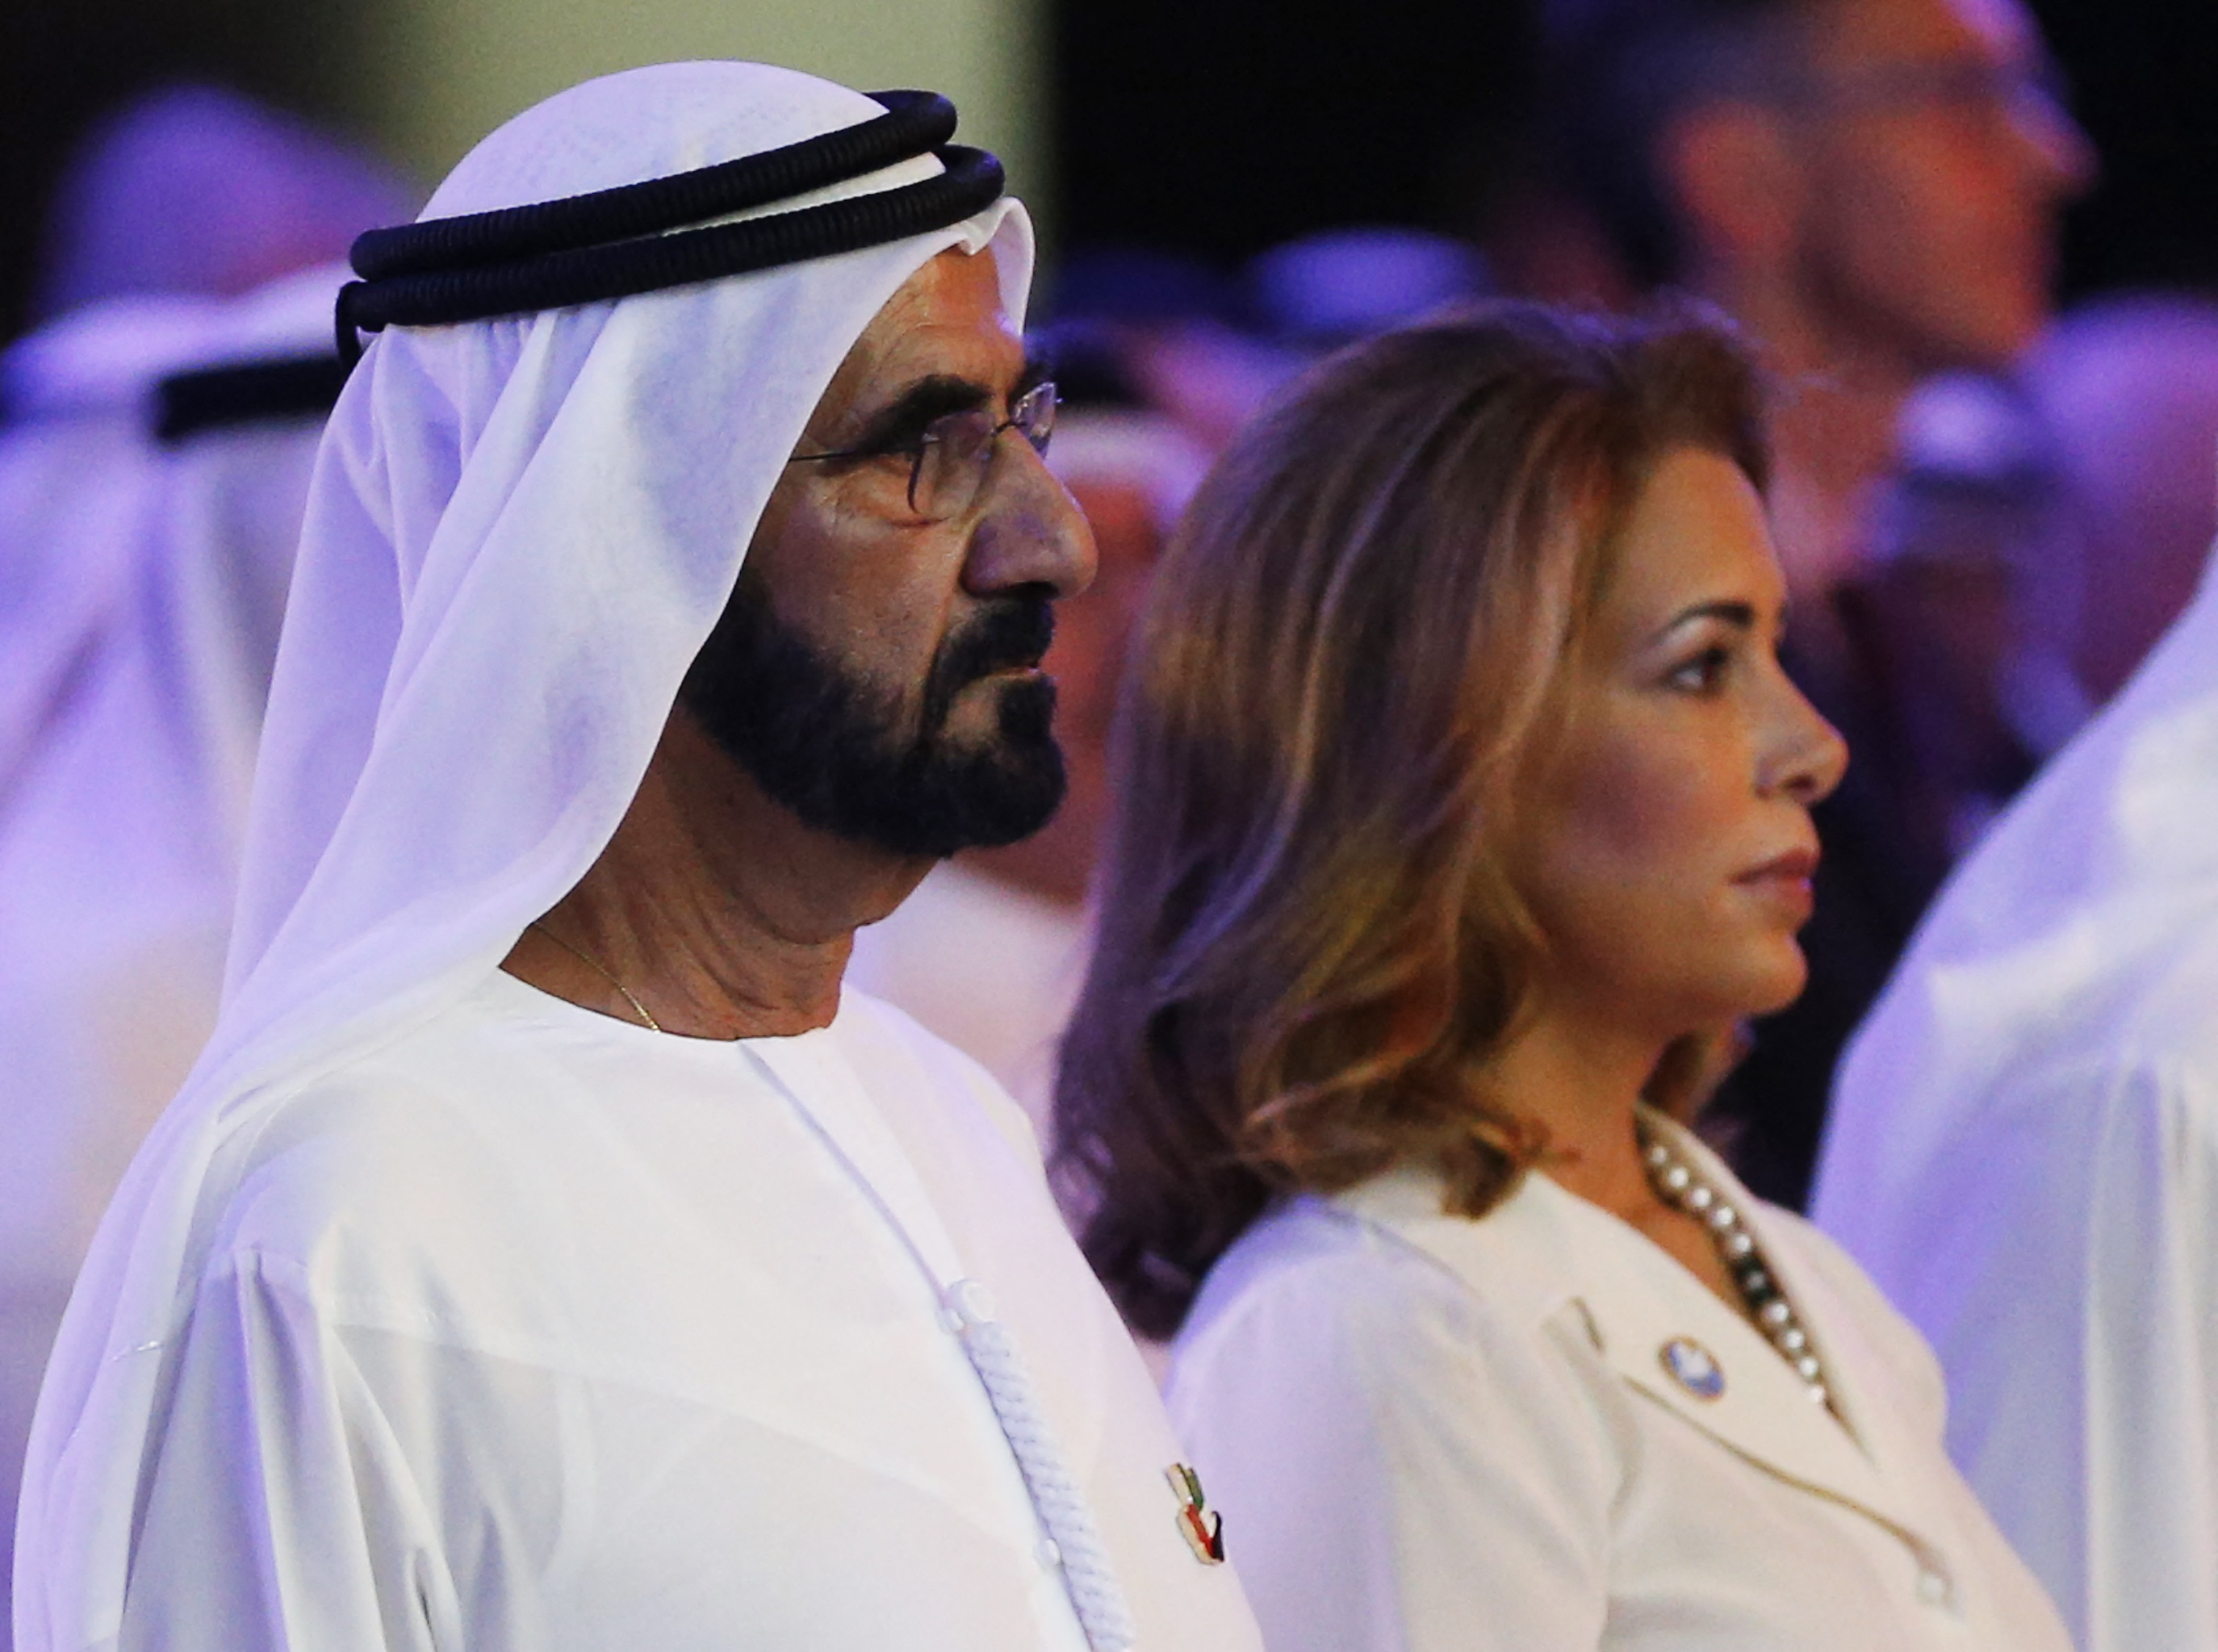 Dubaj sejkje több mint 500 millió fontot fizethet az exfeleségének, akkora veszélyt jelent a nőre